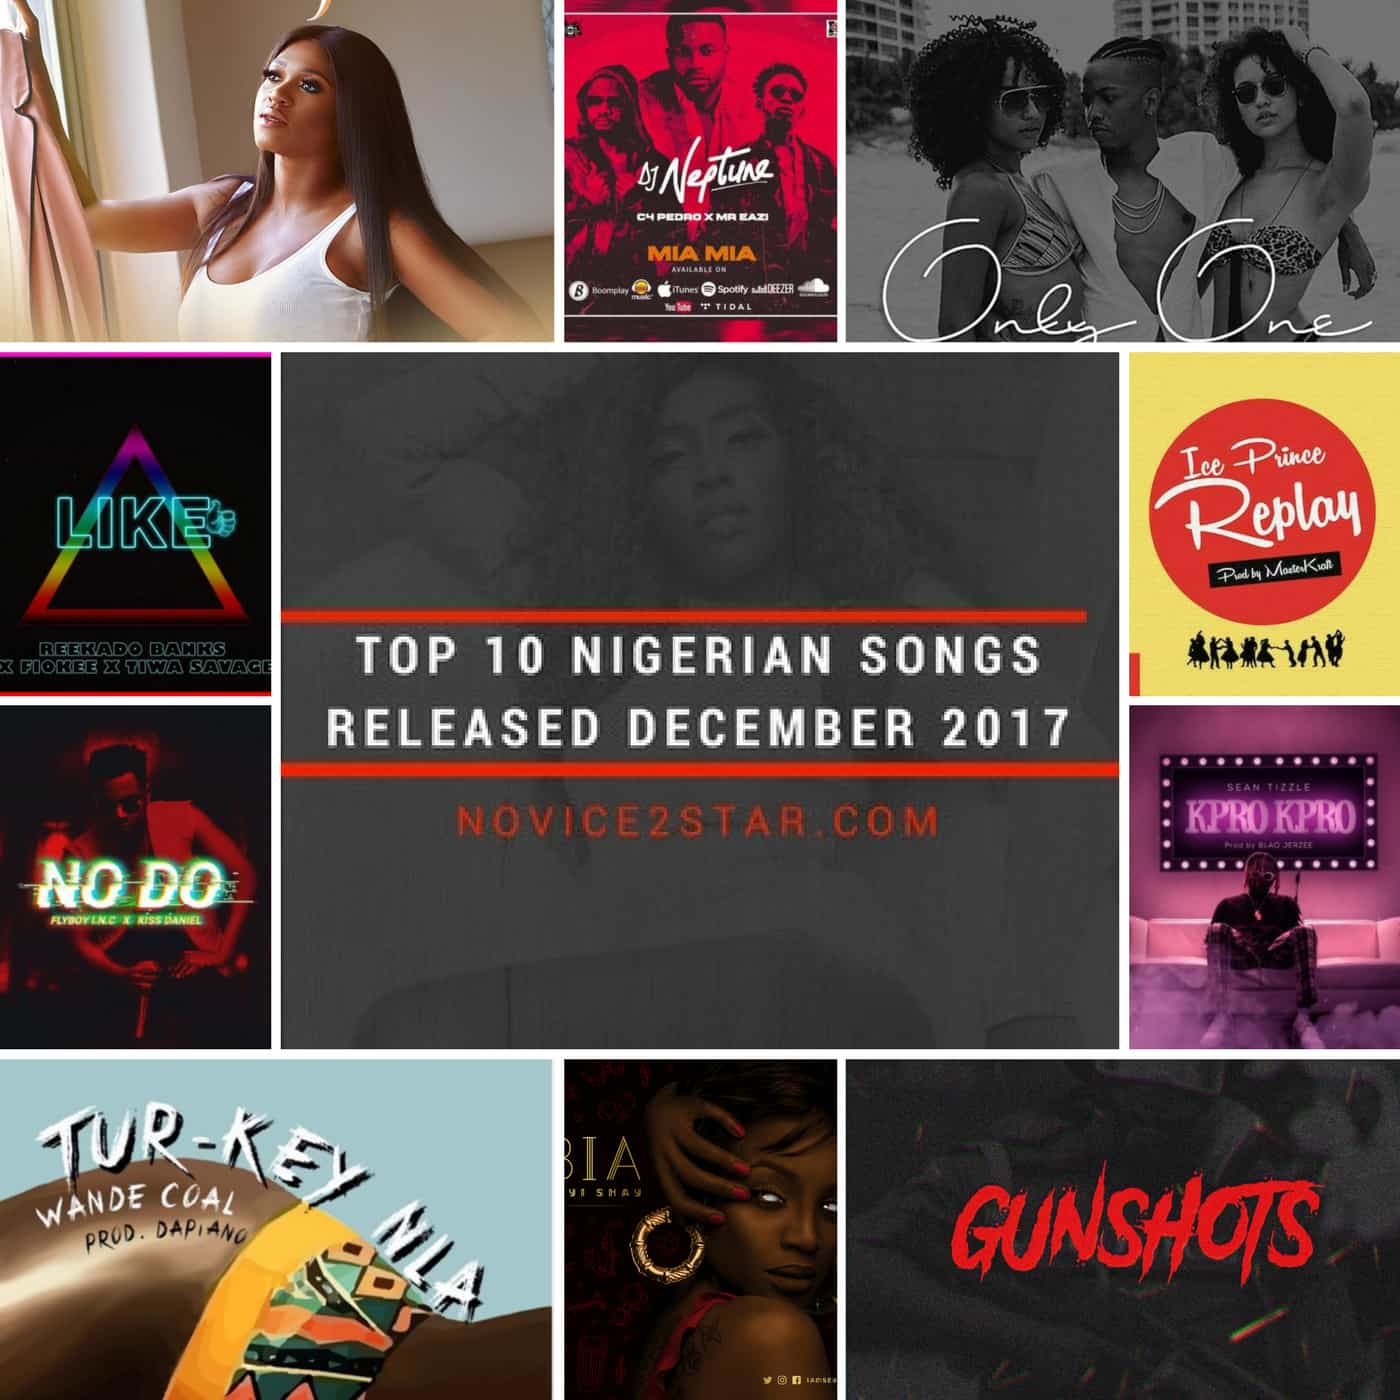 Top 10 Nigerian Songs Released December 2017